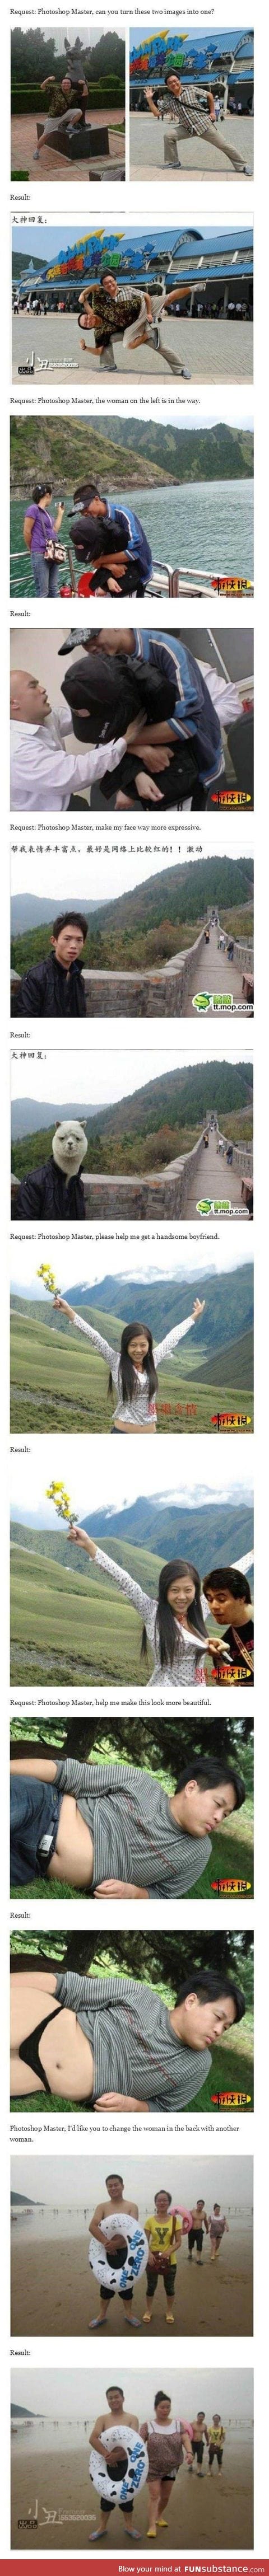 Chinese photoshop master pt2